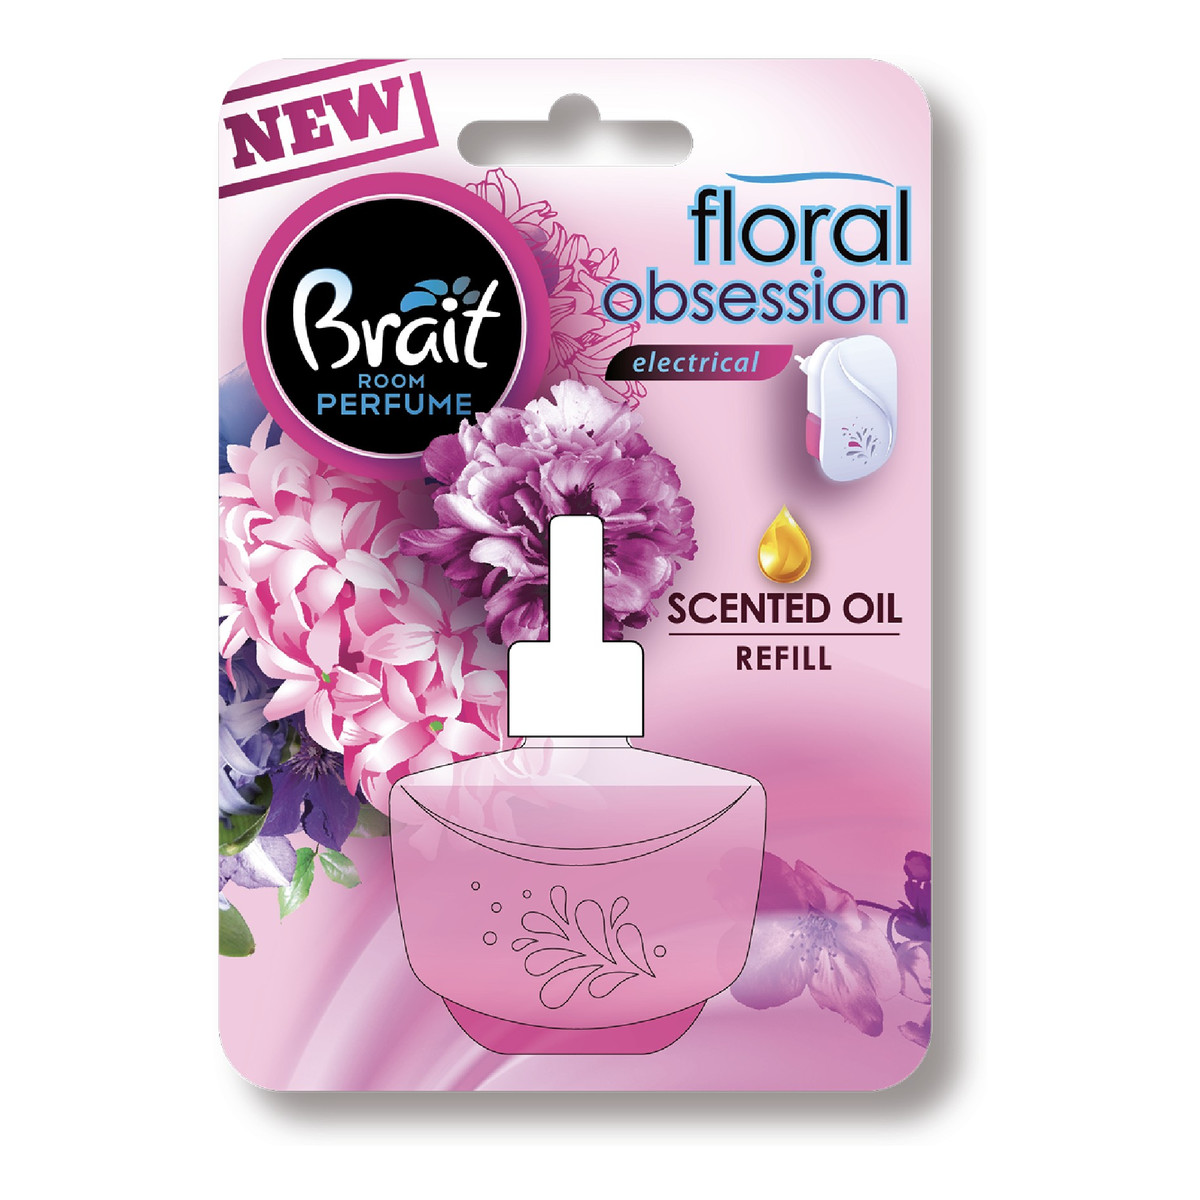 Brait Room Perfume zapas do elektrycznego odświeżacza powietrza Floral Obsession 20ml